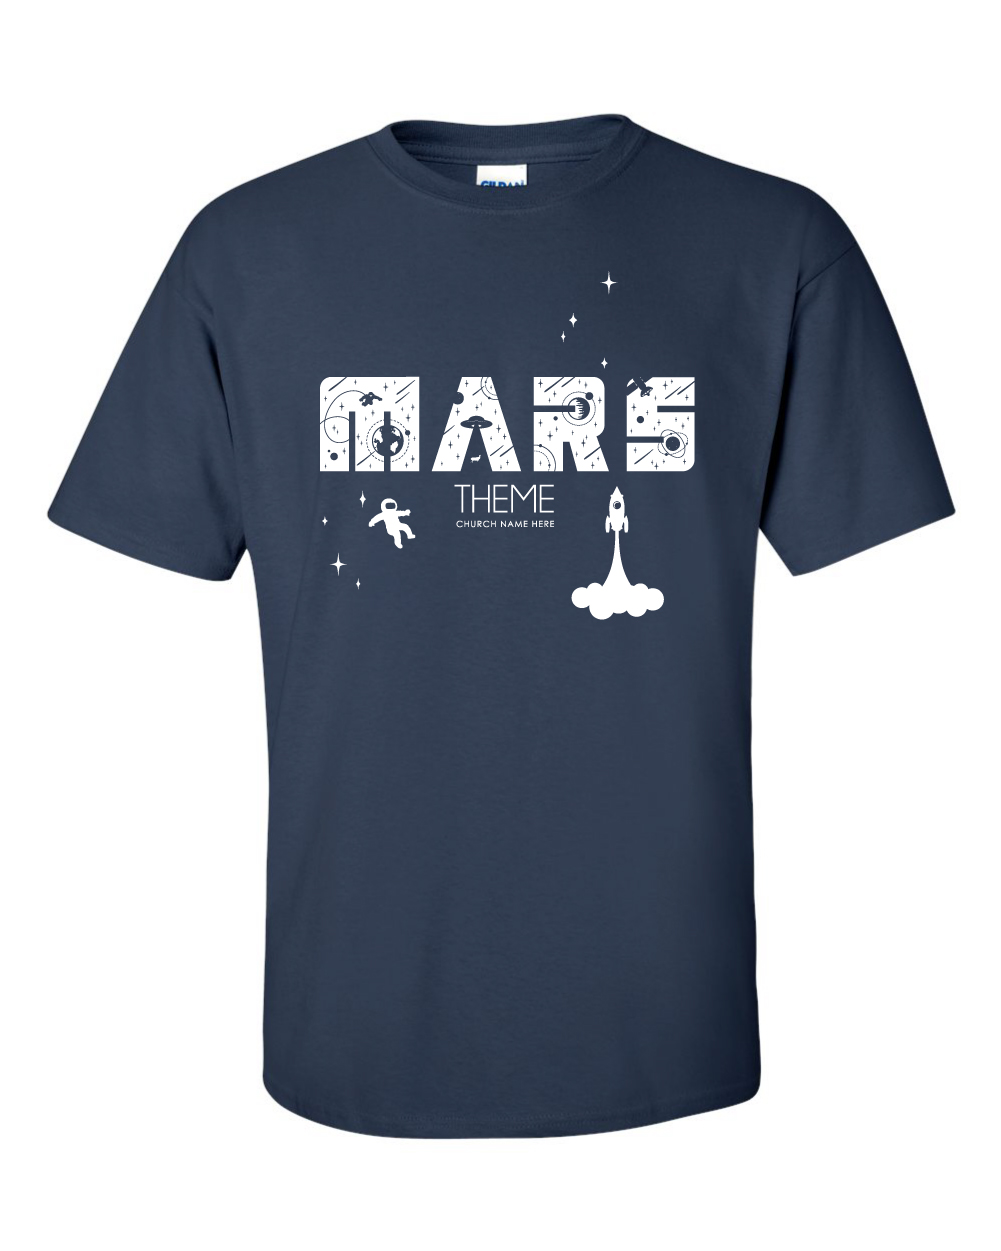 Mars 2-01.jpg